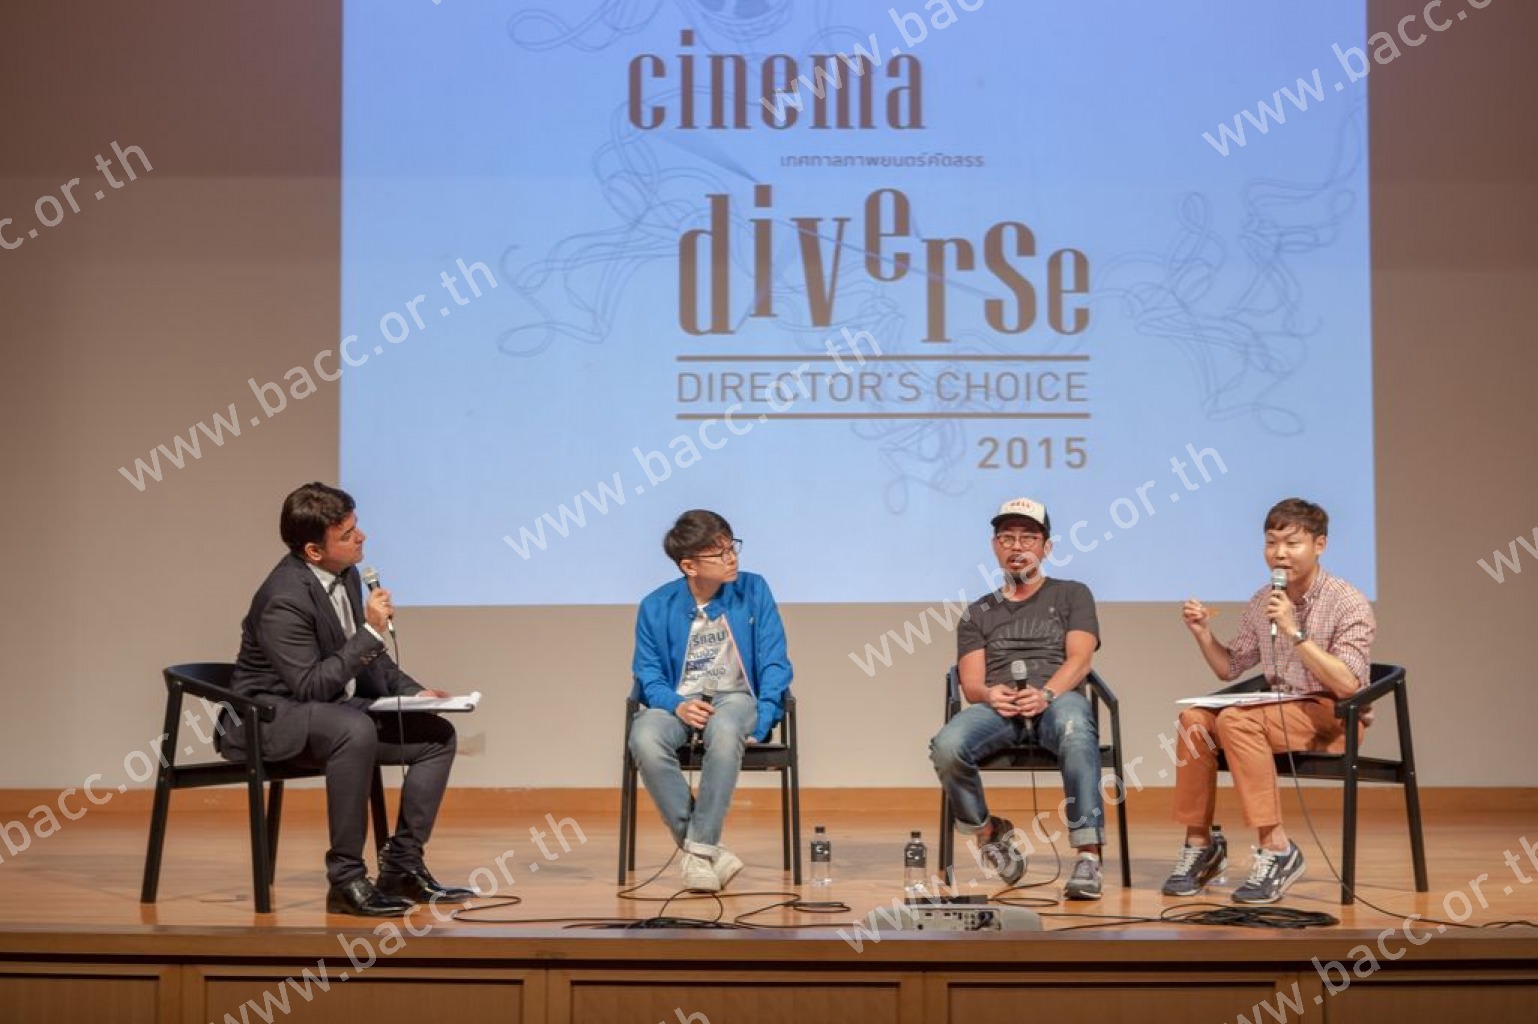 เทศกาลภาพยนตร์คัดสรร CINEMA DIVERSE 2015 : DIRECTOR’S CHOICE - The Chaser (2008)